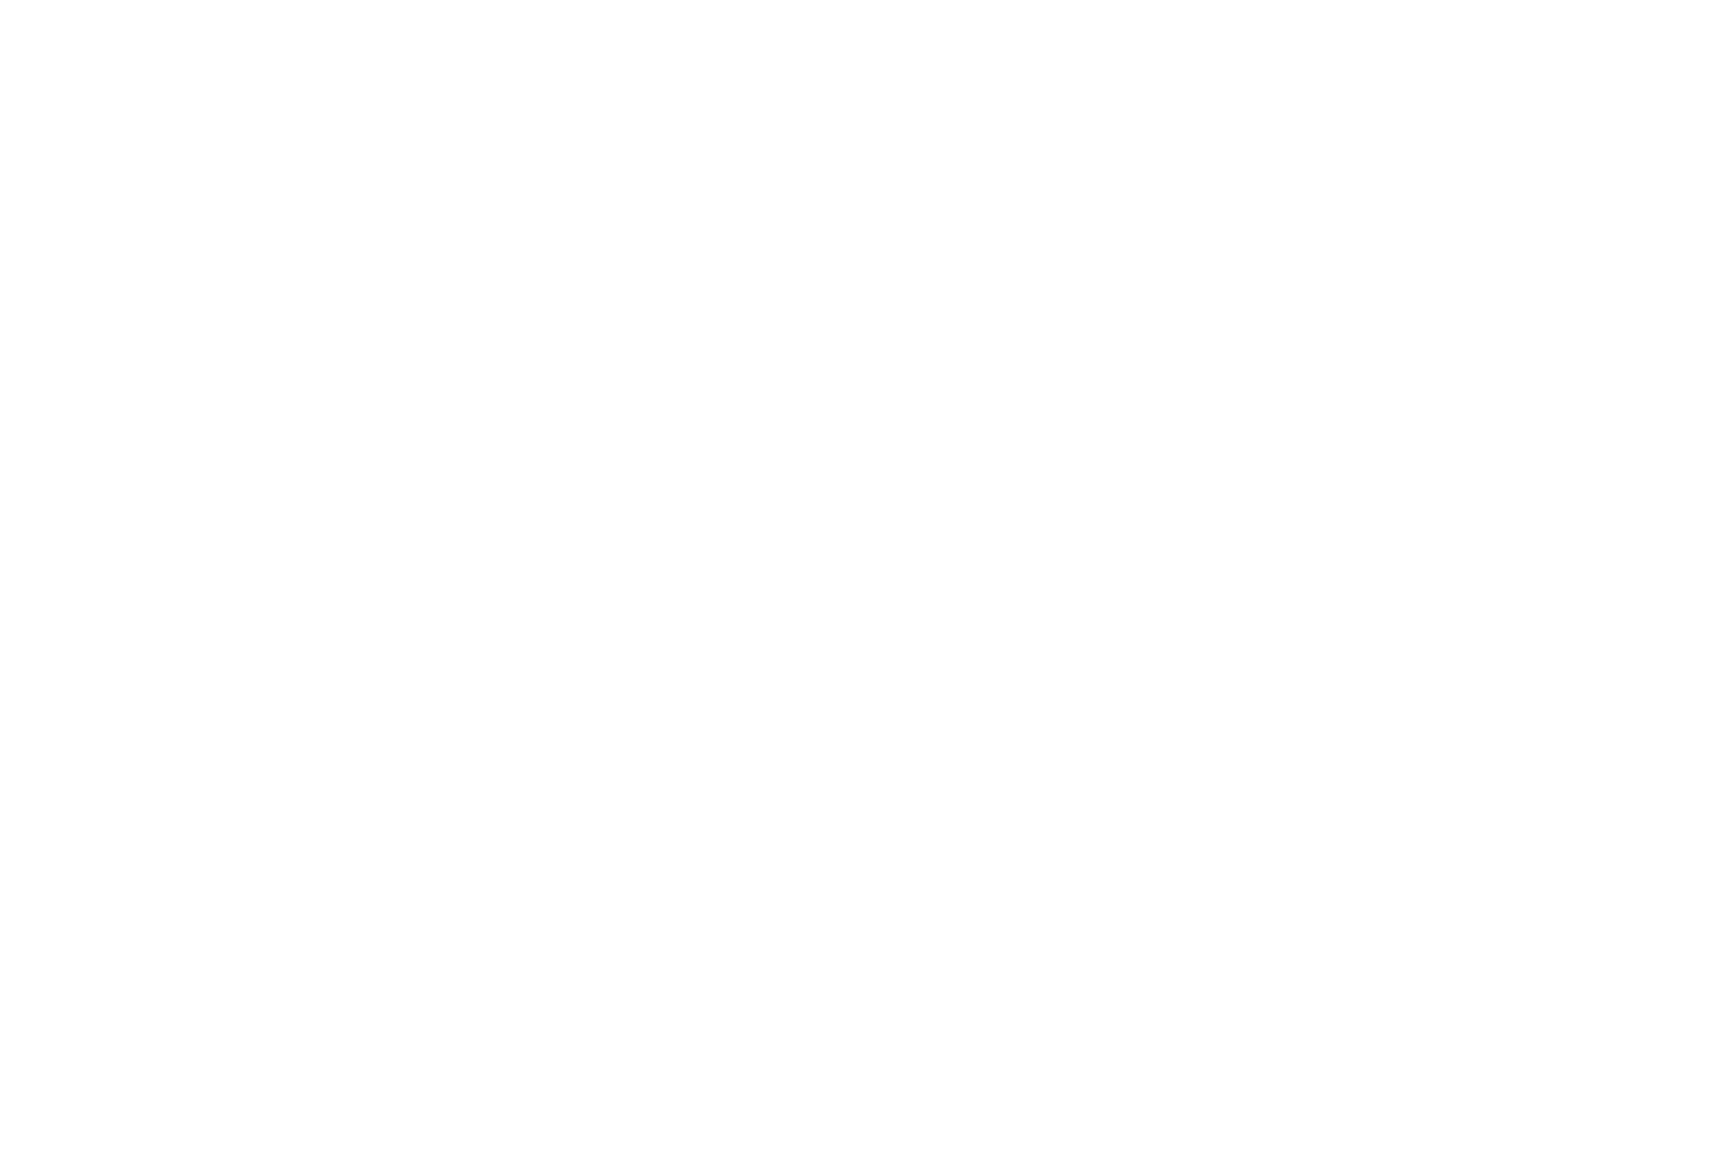 NOMINEE - STRANGER DAYS INDEPENDENT FILM FESTIVAL - 2021.png